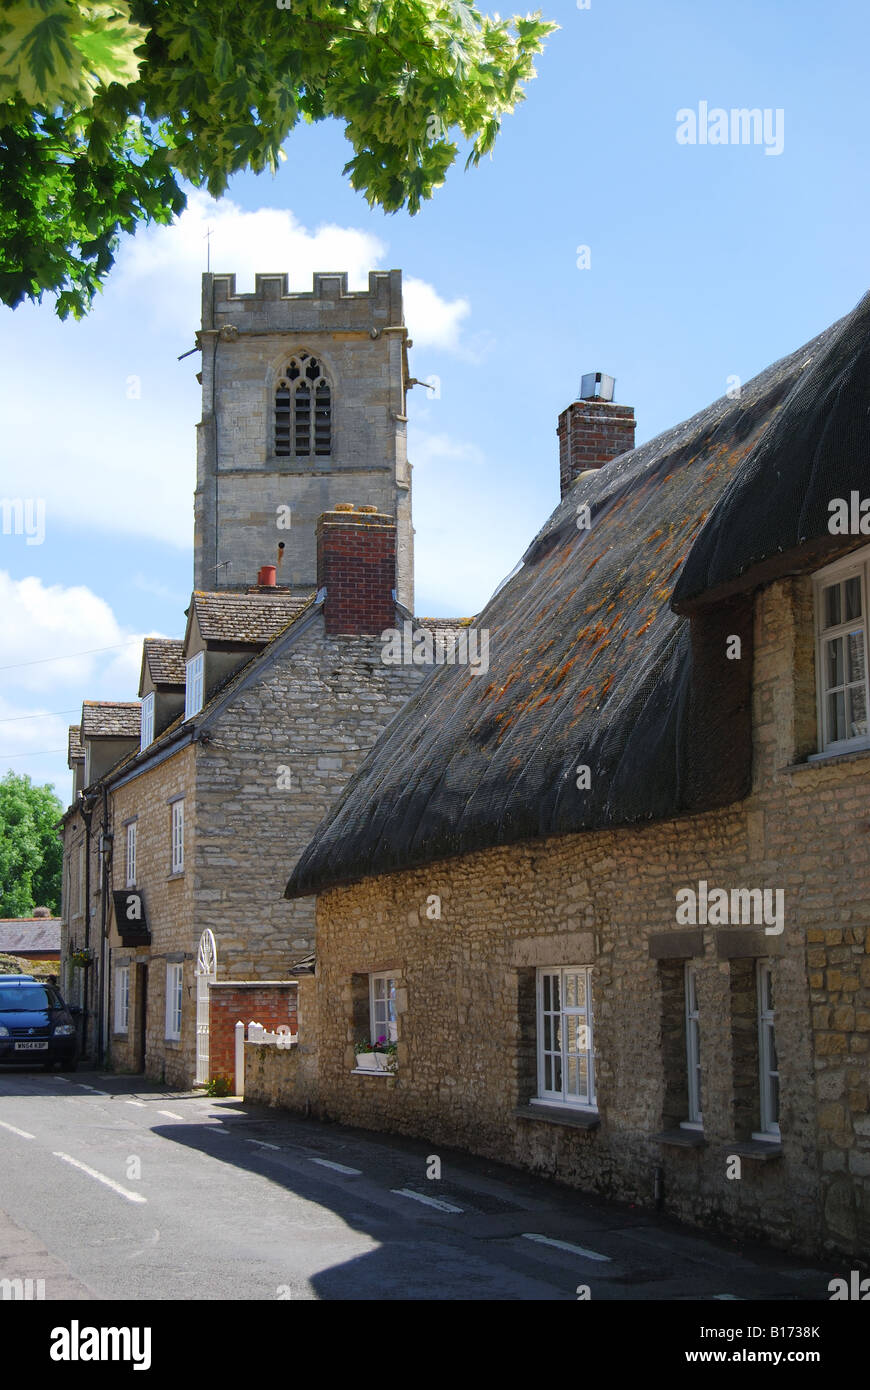 L'église paroissiale de St Leonard's et de cottages, Eynsham, Cotswolds, Oxfordshire, Angleterre, Royaume-Uni Banque D'Images